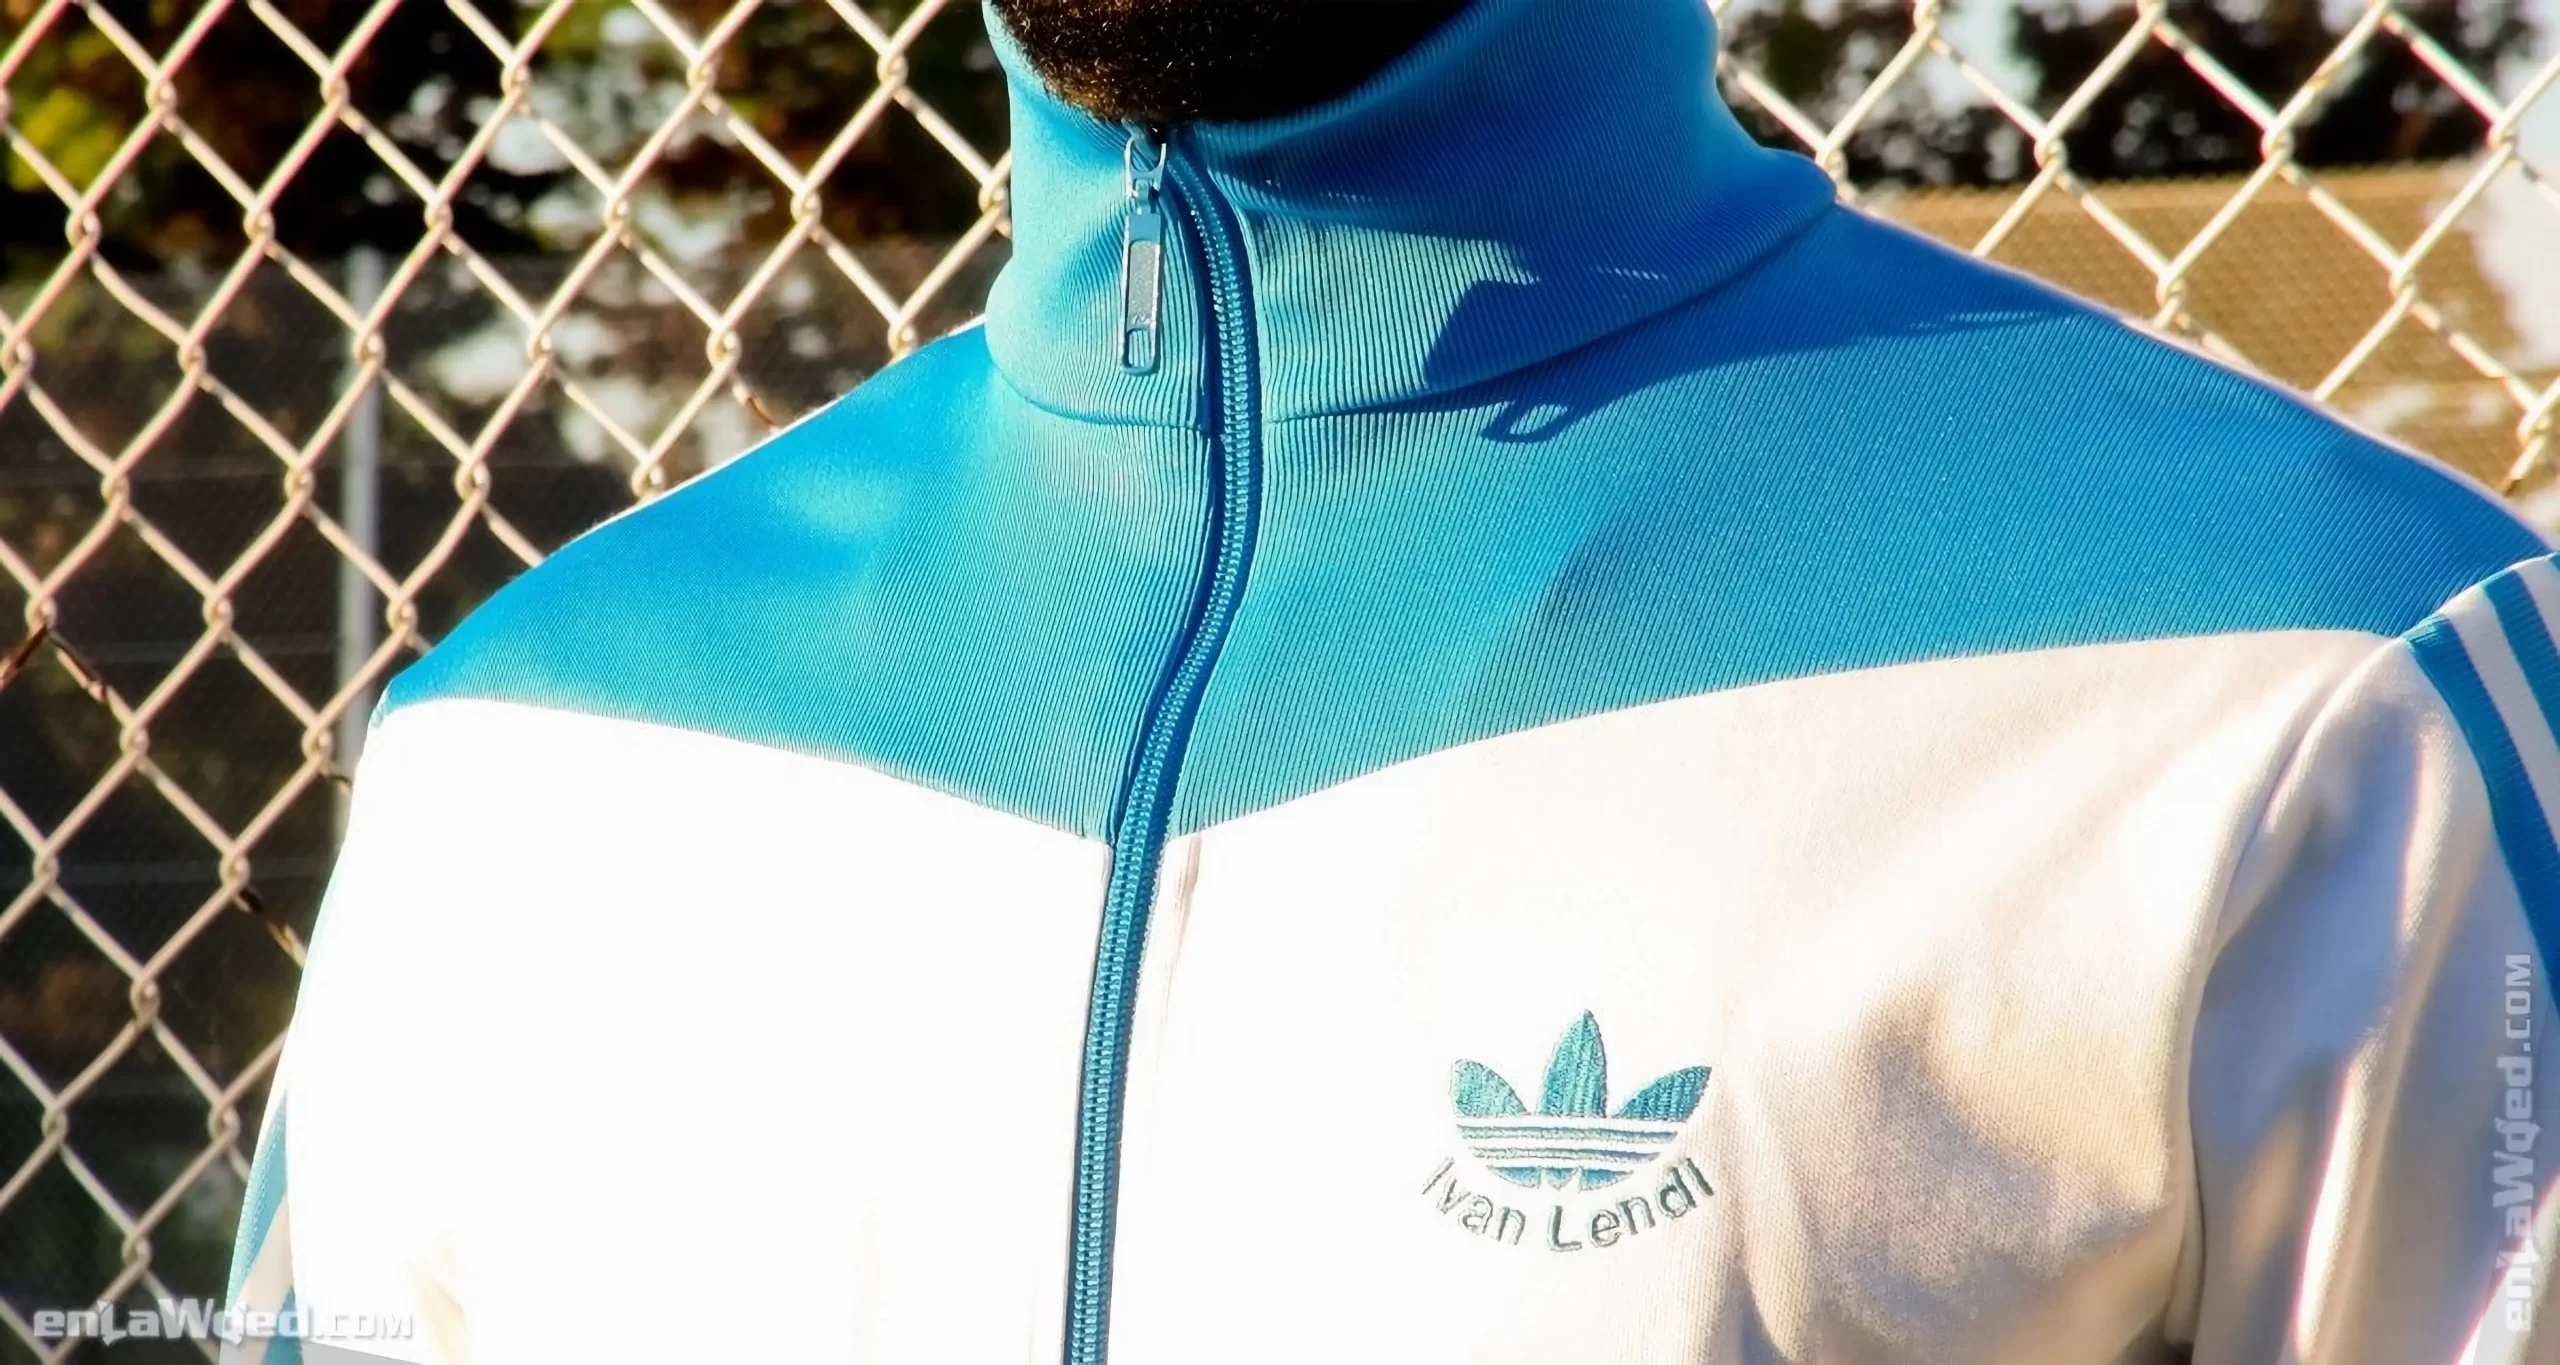 Men’s 2004 Ivan Lendl Track Top by Adidas Originals: Triumph (EnLawded.com file #lmc438psm6etrmhca5)